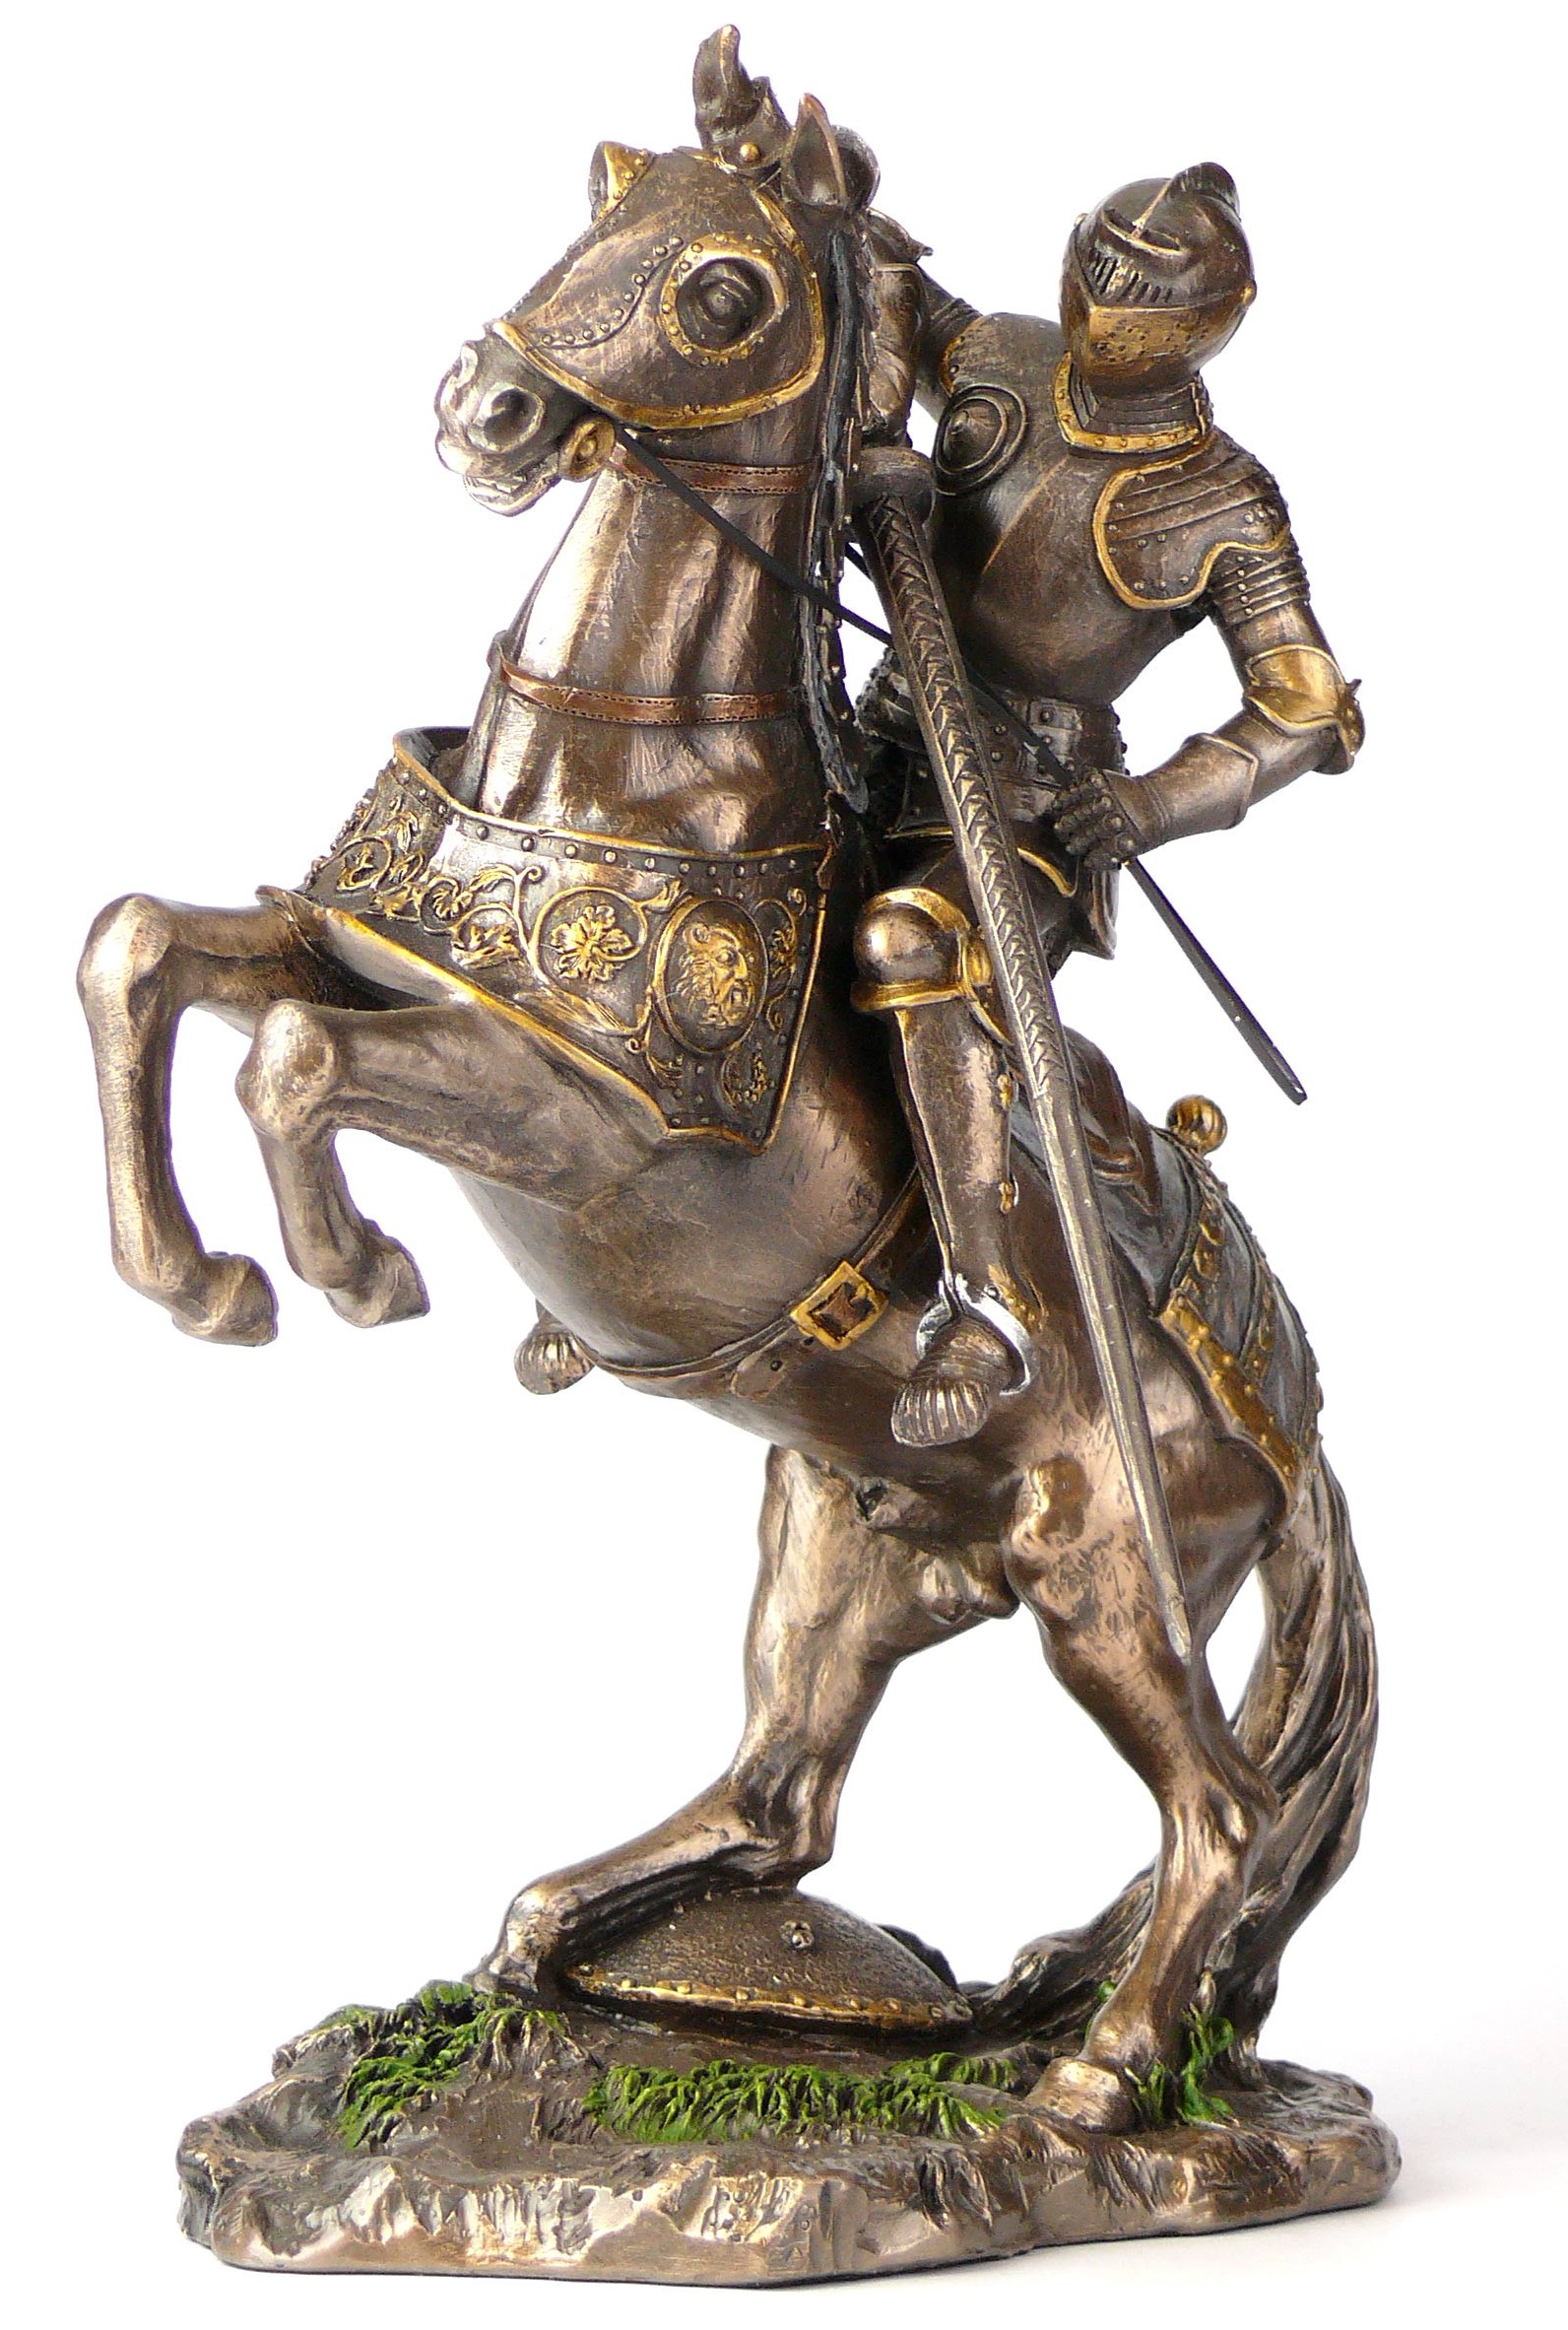 На коне статуэтка. Статуэтка "рыцарь на коне" (WS-91/1). Veronese статуэтки рыцарей на коне. Статуэтка "рыцарь". Металлические фигурки воинов.